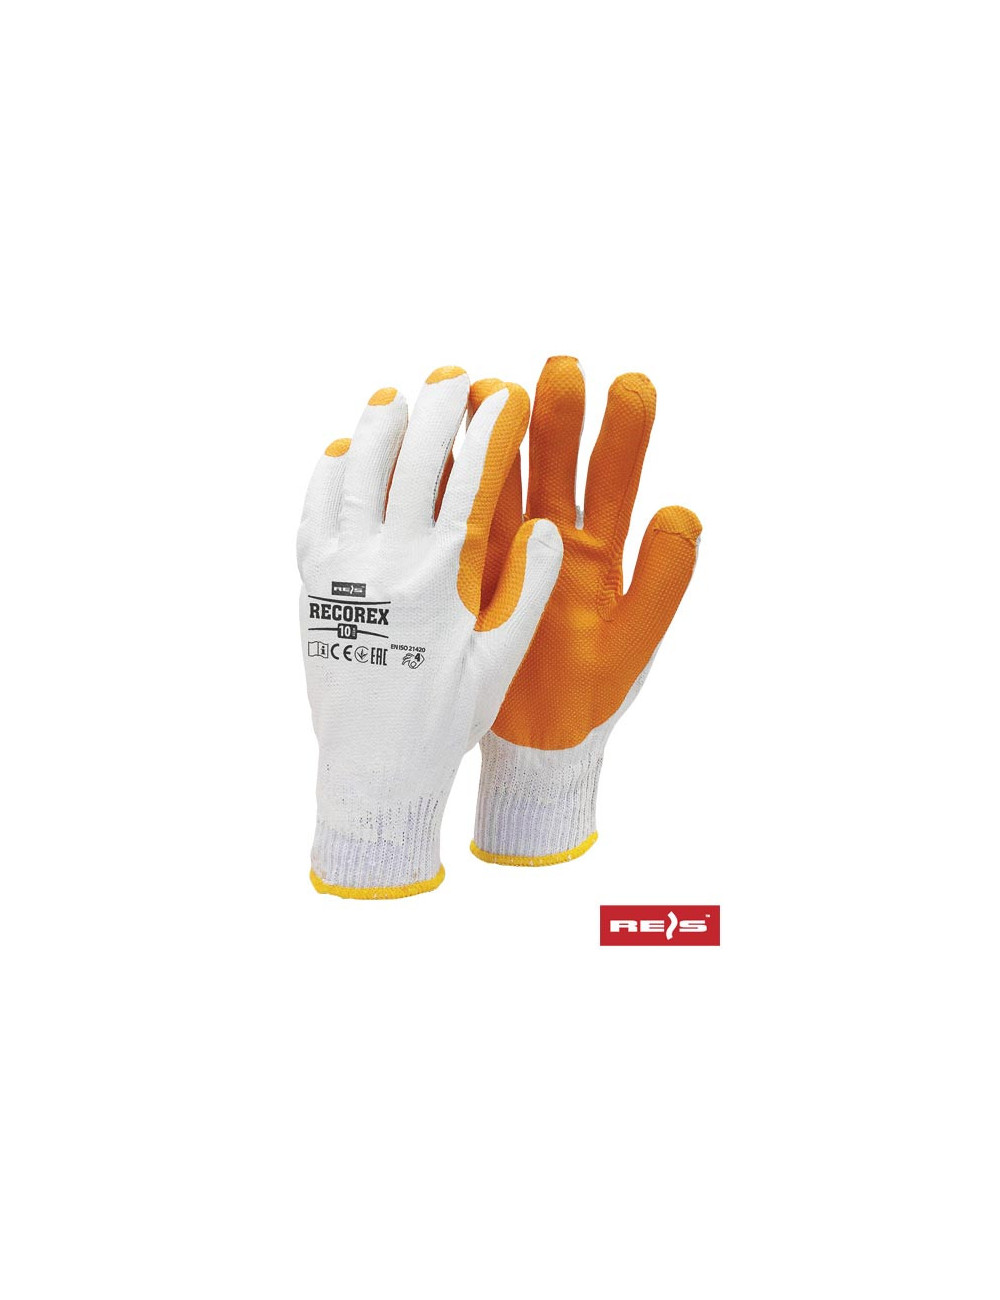 Protective gloves recorex wp white-orange Reis